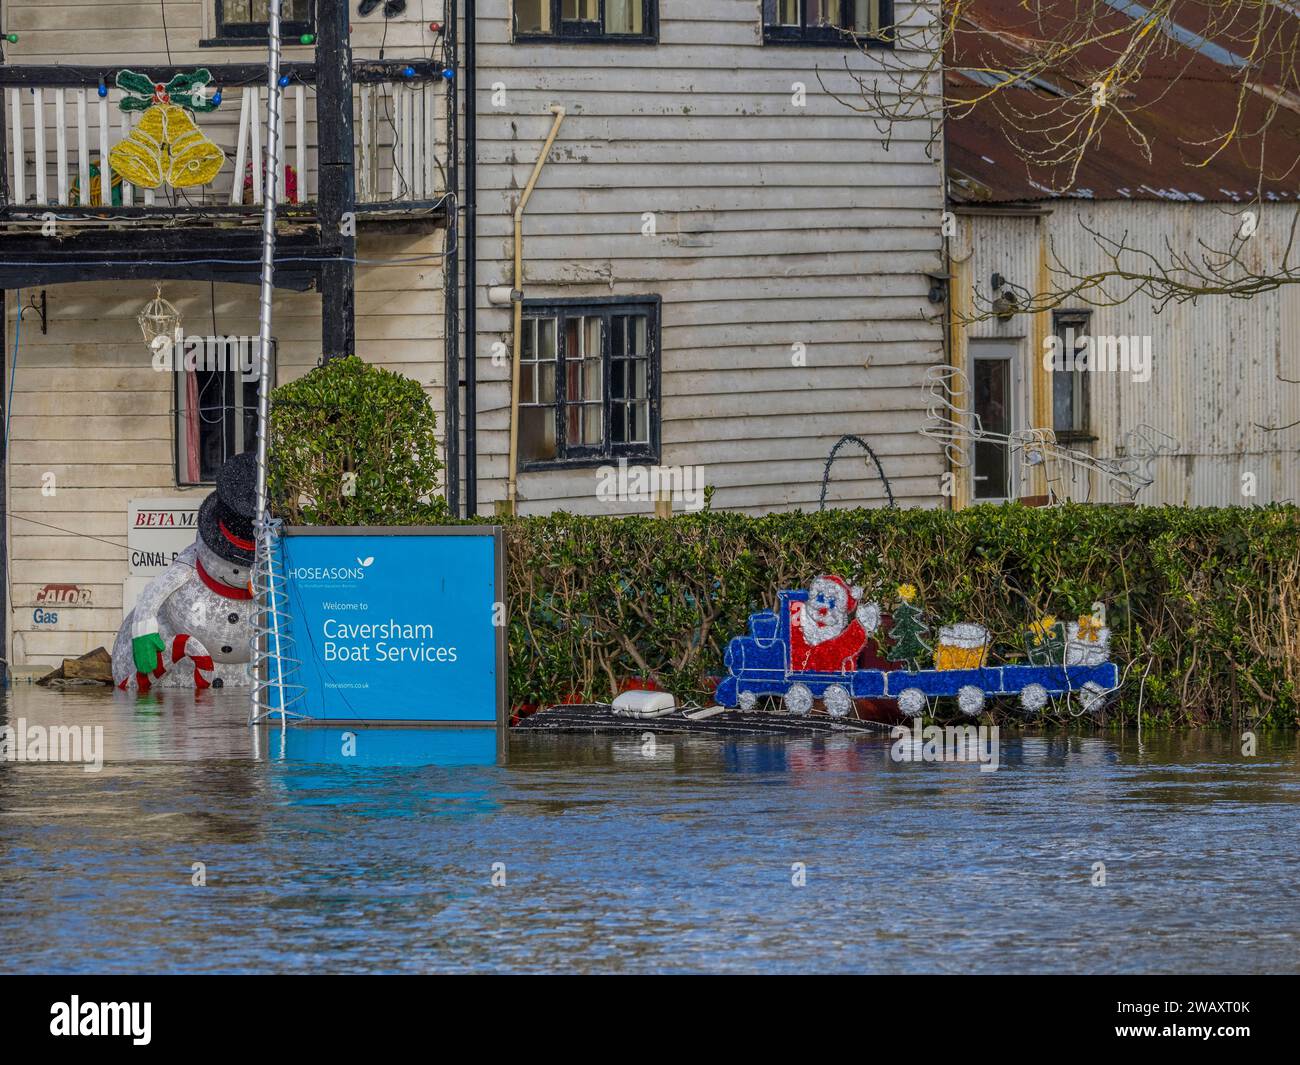 Decorazioni natalizie e innalzamento delle acque alluvionali, Fry's Island, fiume Tamigi, Reading, Berkshire, Inghilterra, Regno Unito, Regno Unito. Foto Stock